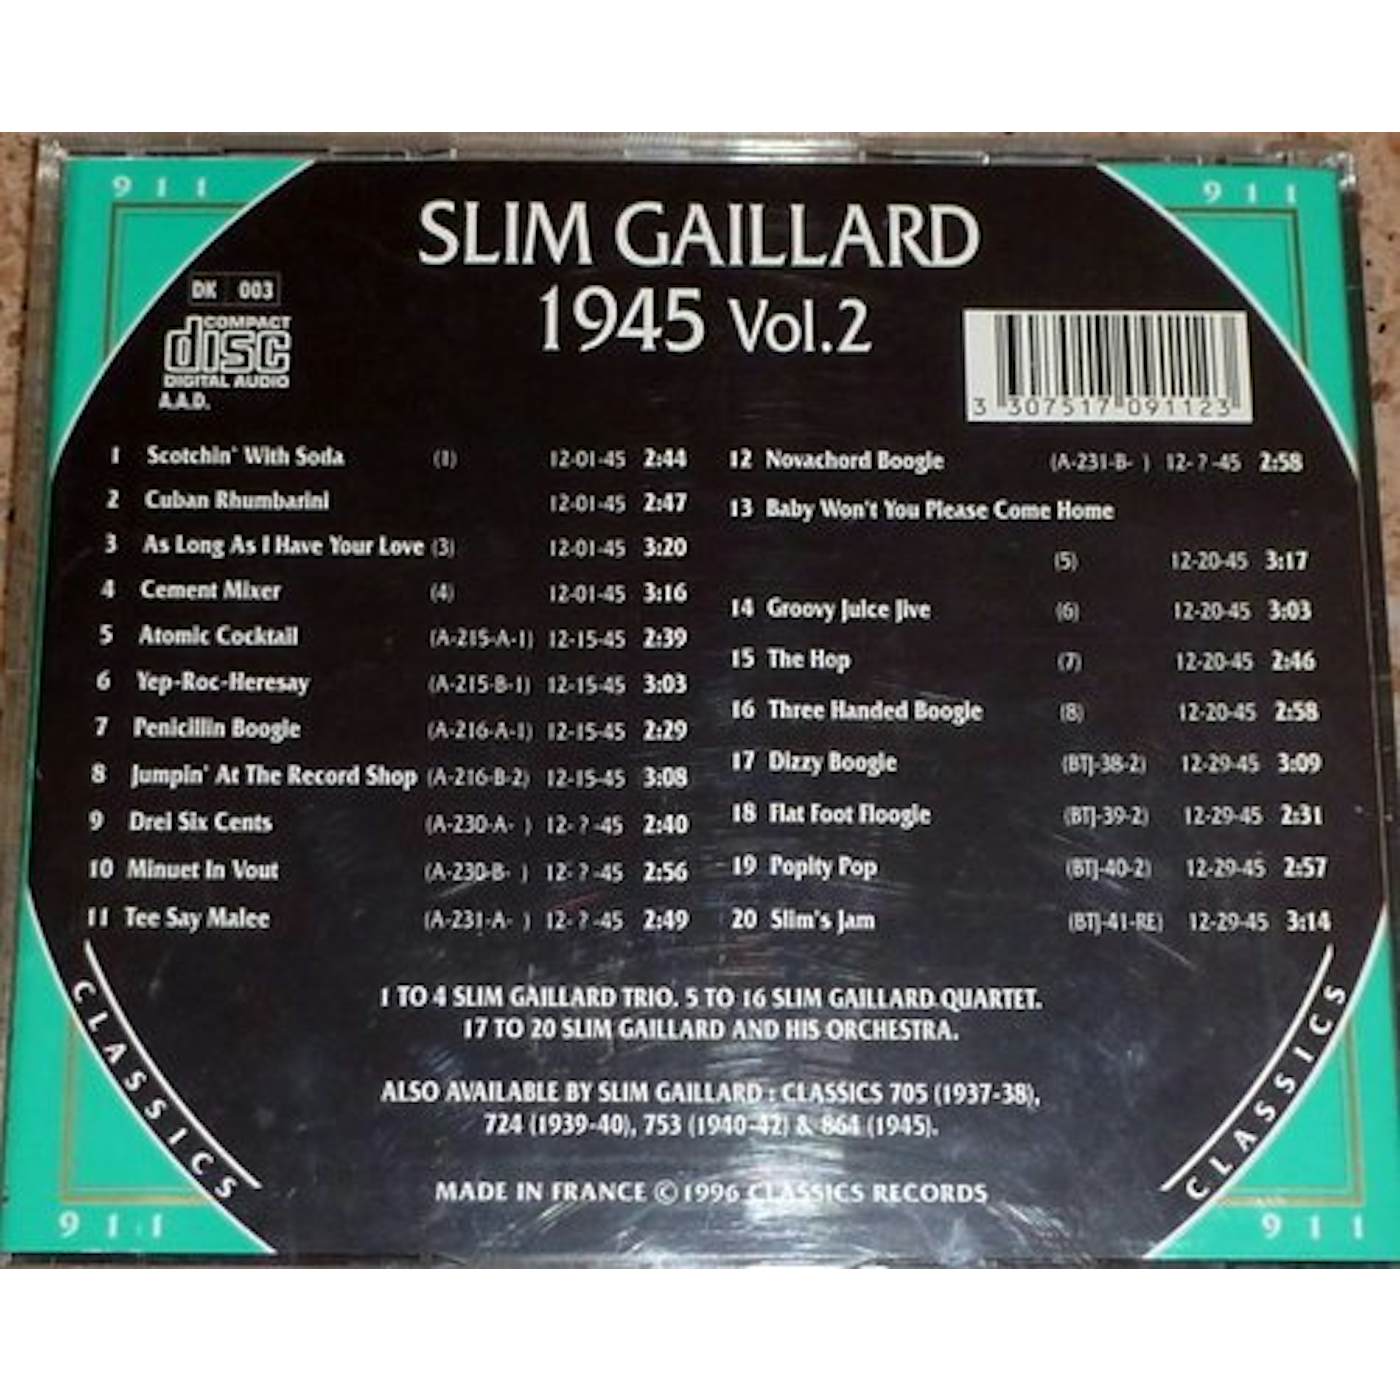 Slim Gaillard 1945 VOL 2 CD